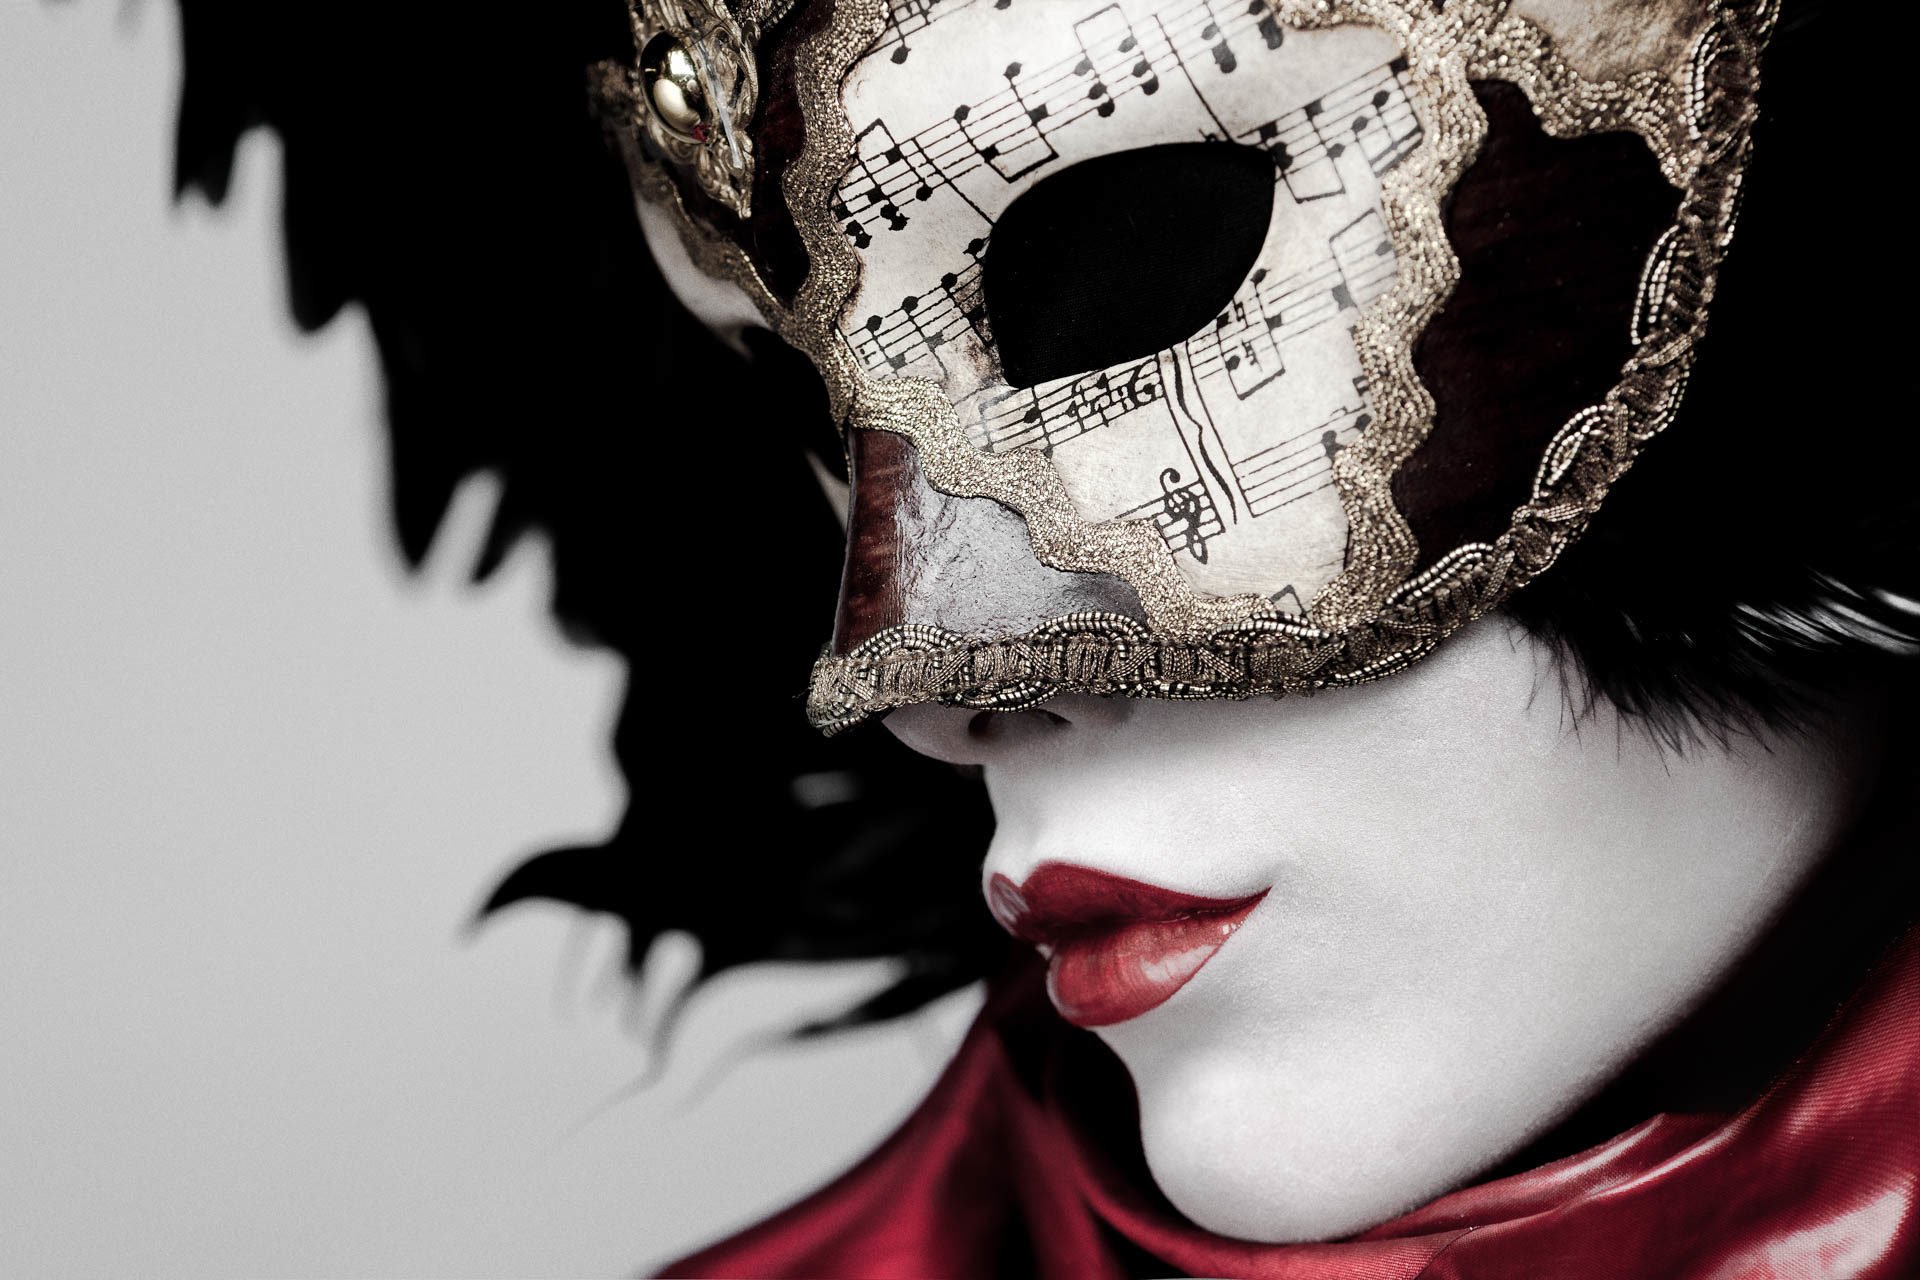 Загадочная маска. Маска венецианская. Девушка в театральной маске. Девушка в венецианской маске. Девушка в карнавальной маске.